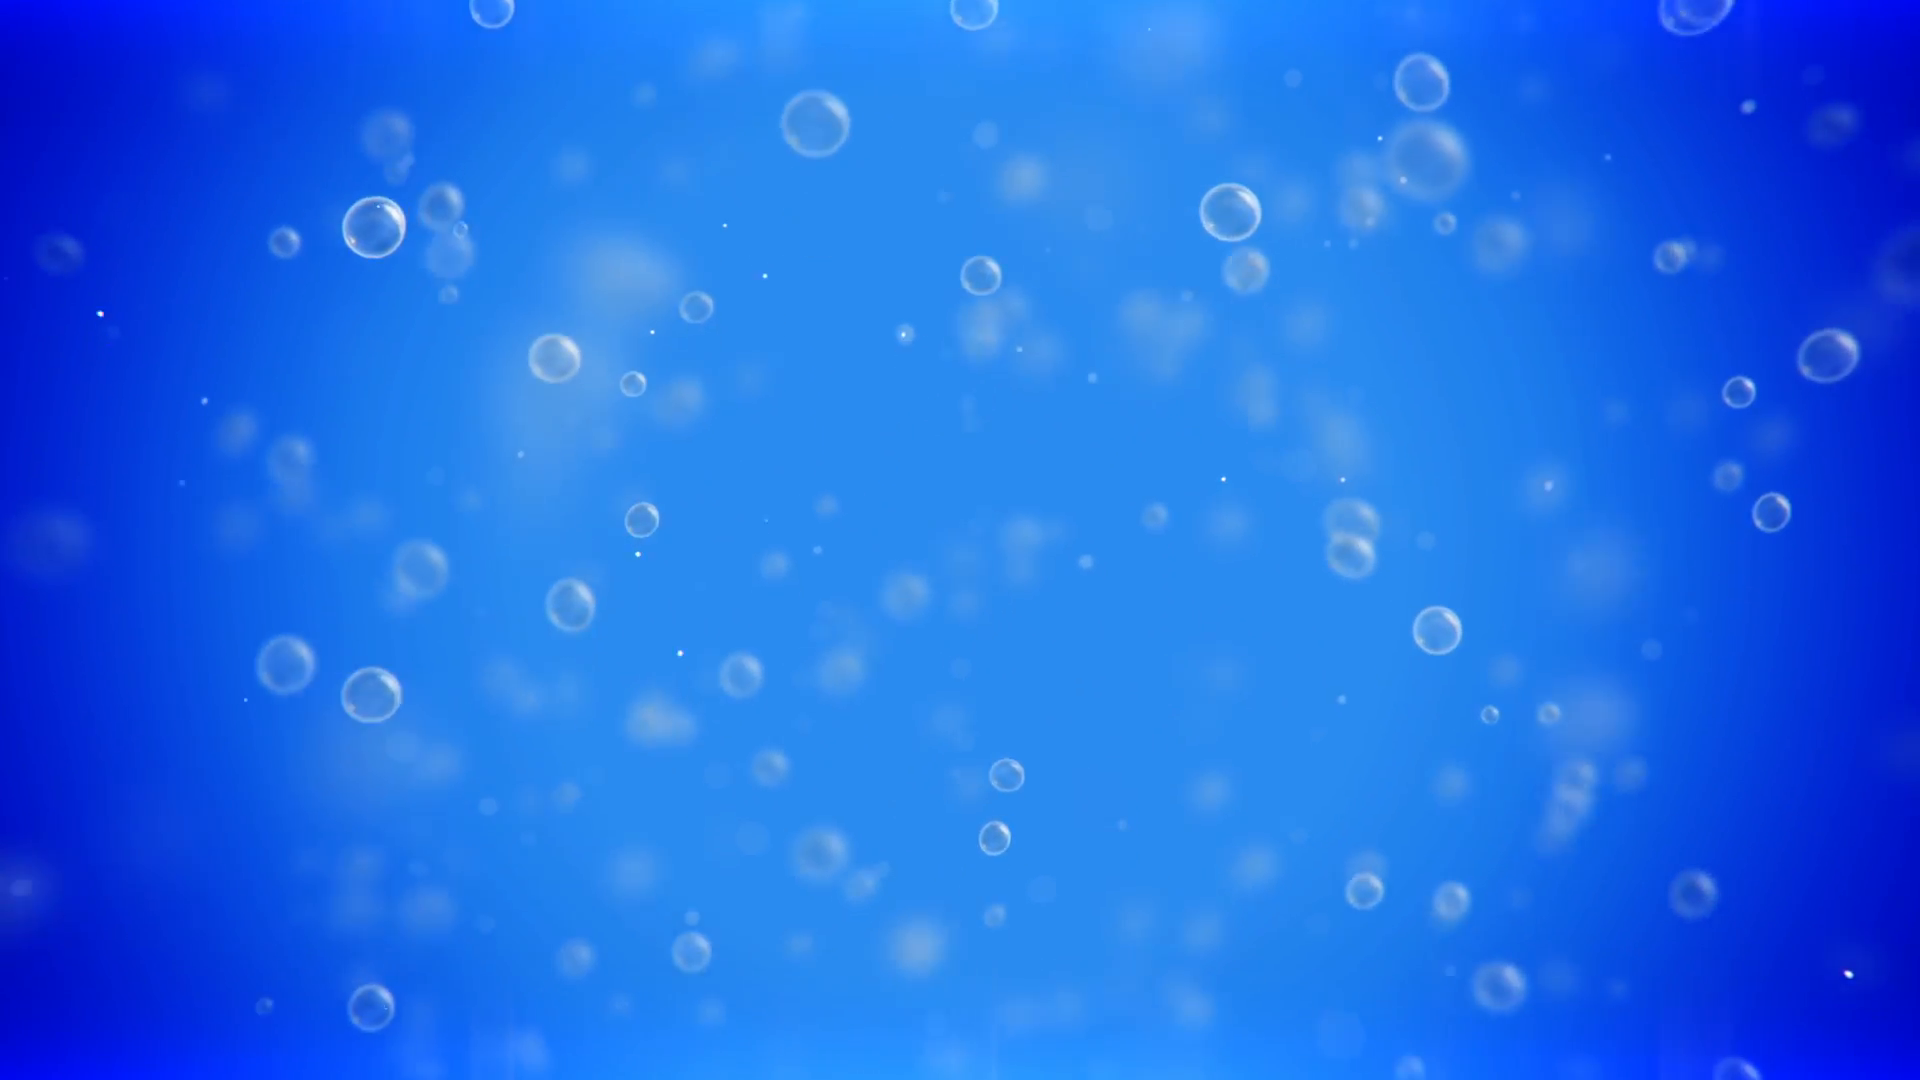 Bubbles background photo